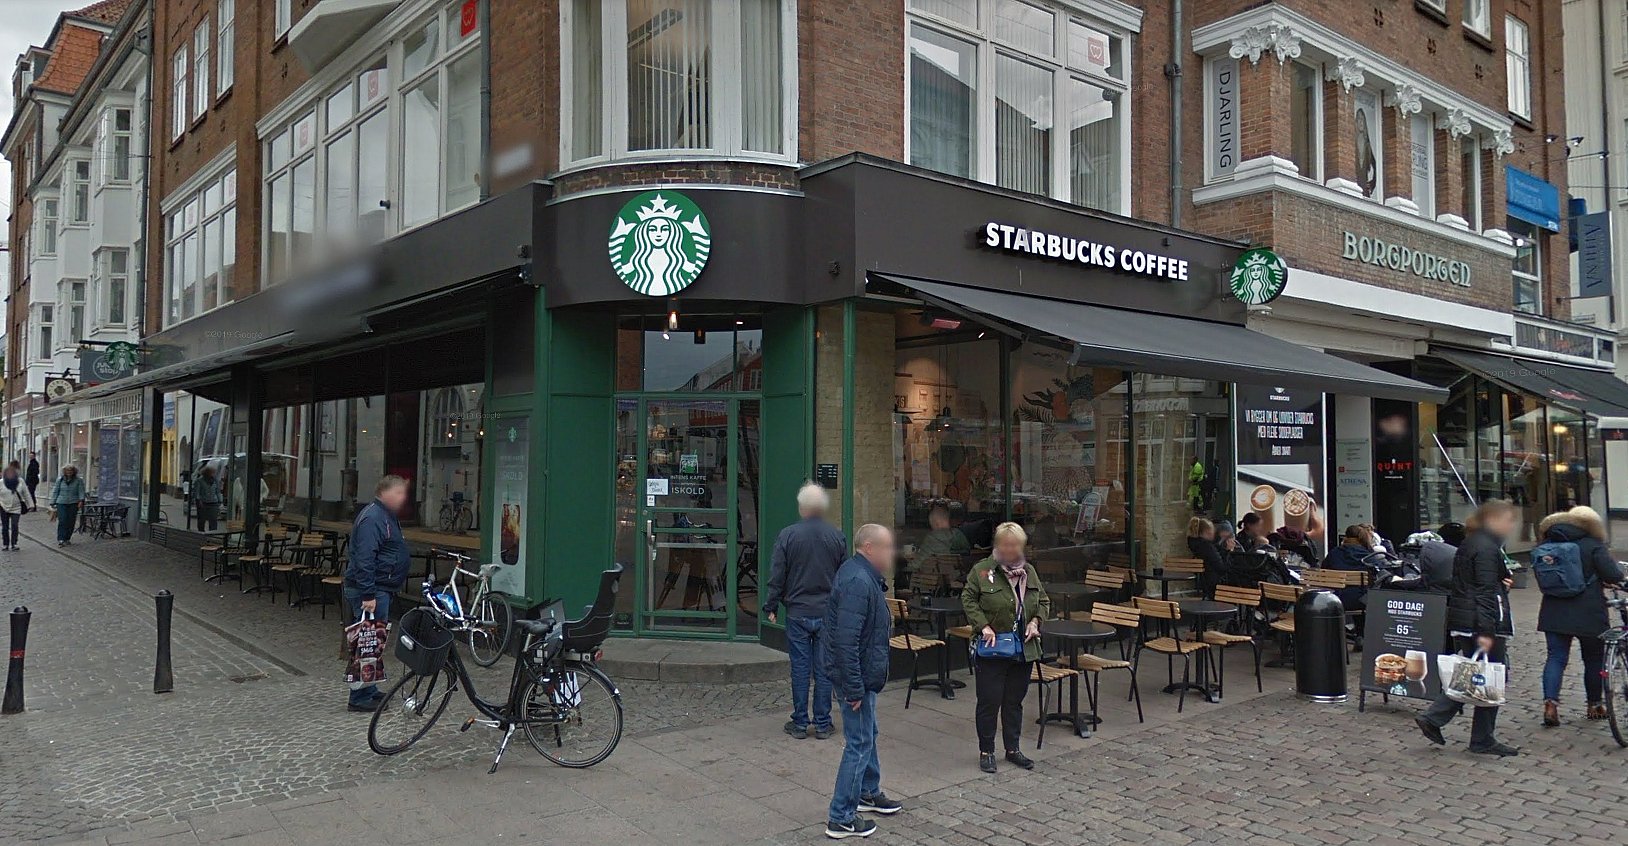 Bøde Starbucks for uhygiejniske forhold TV2 Østjylland